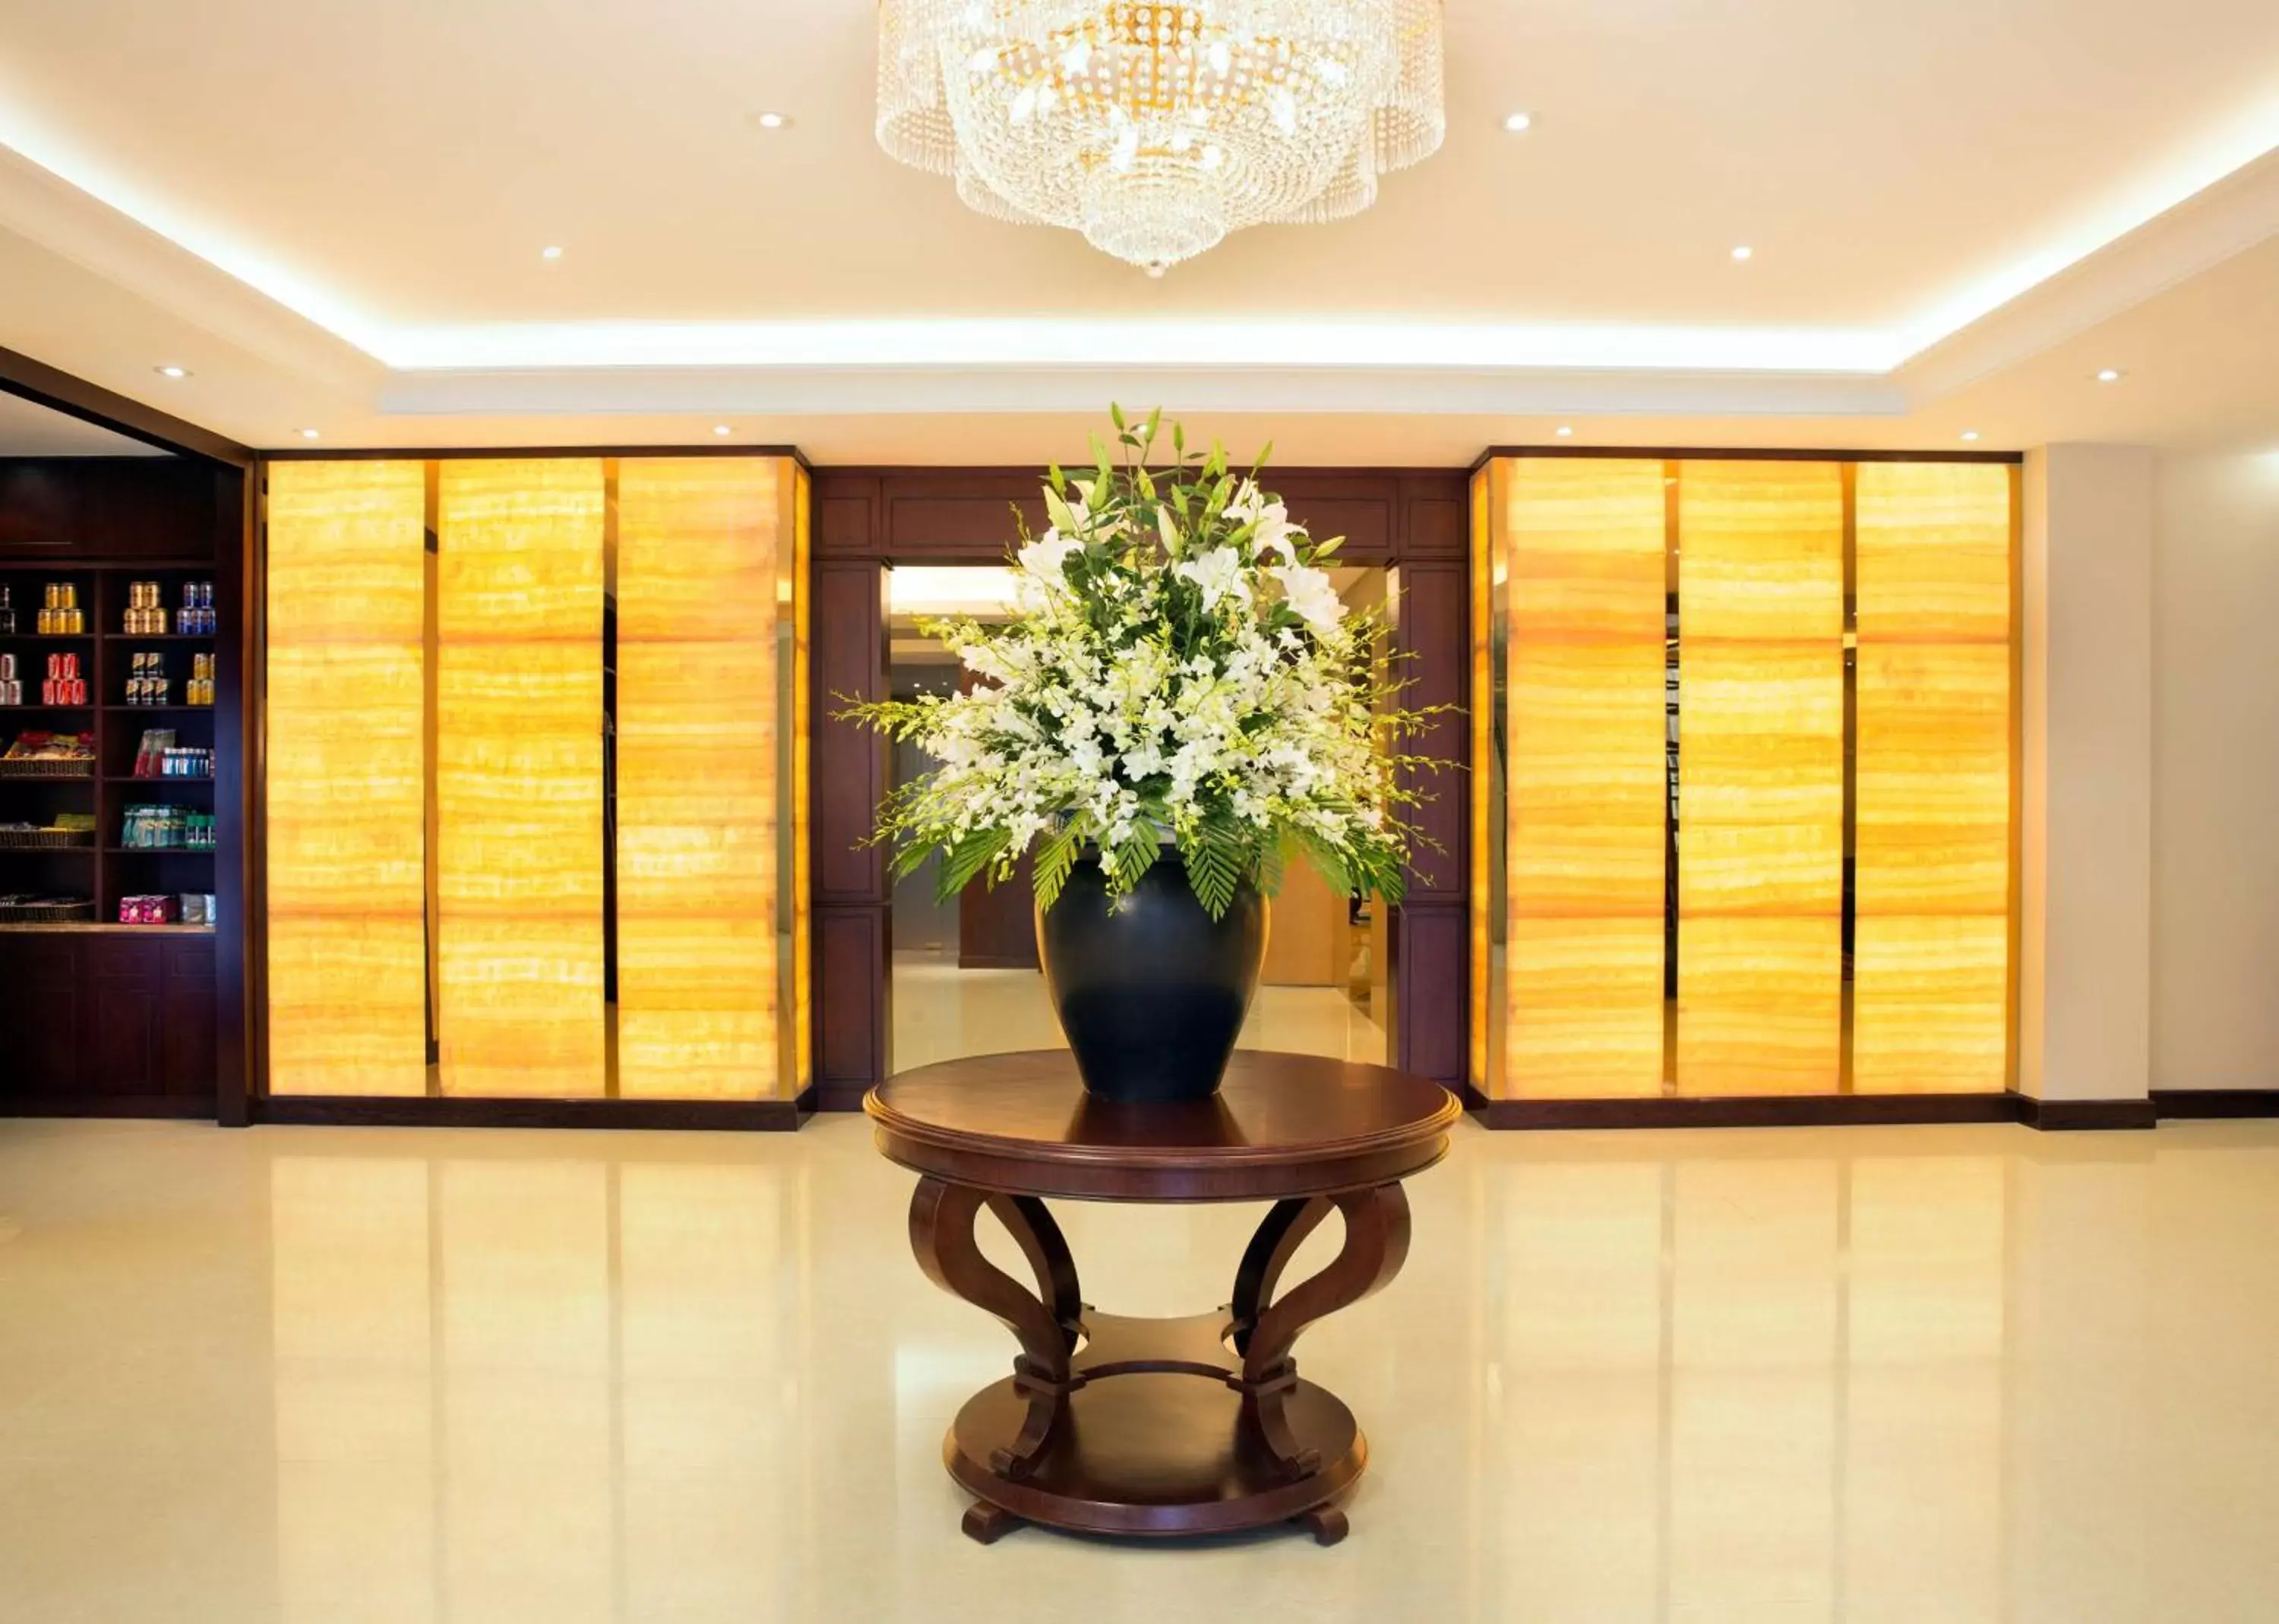 Lobby or reception, Lobby/Reception in Hilton Garden Inn Hanoi